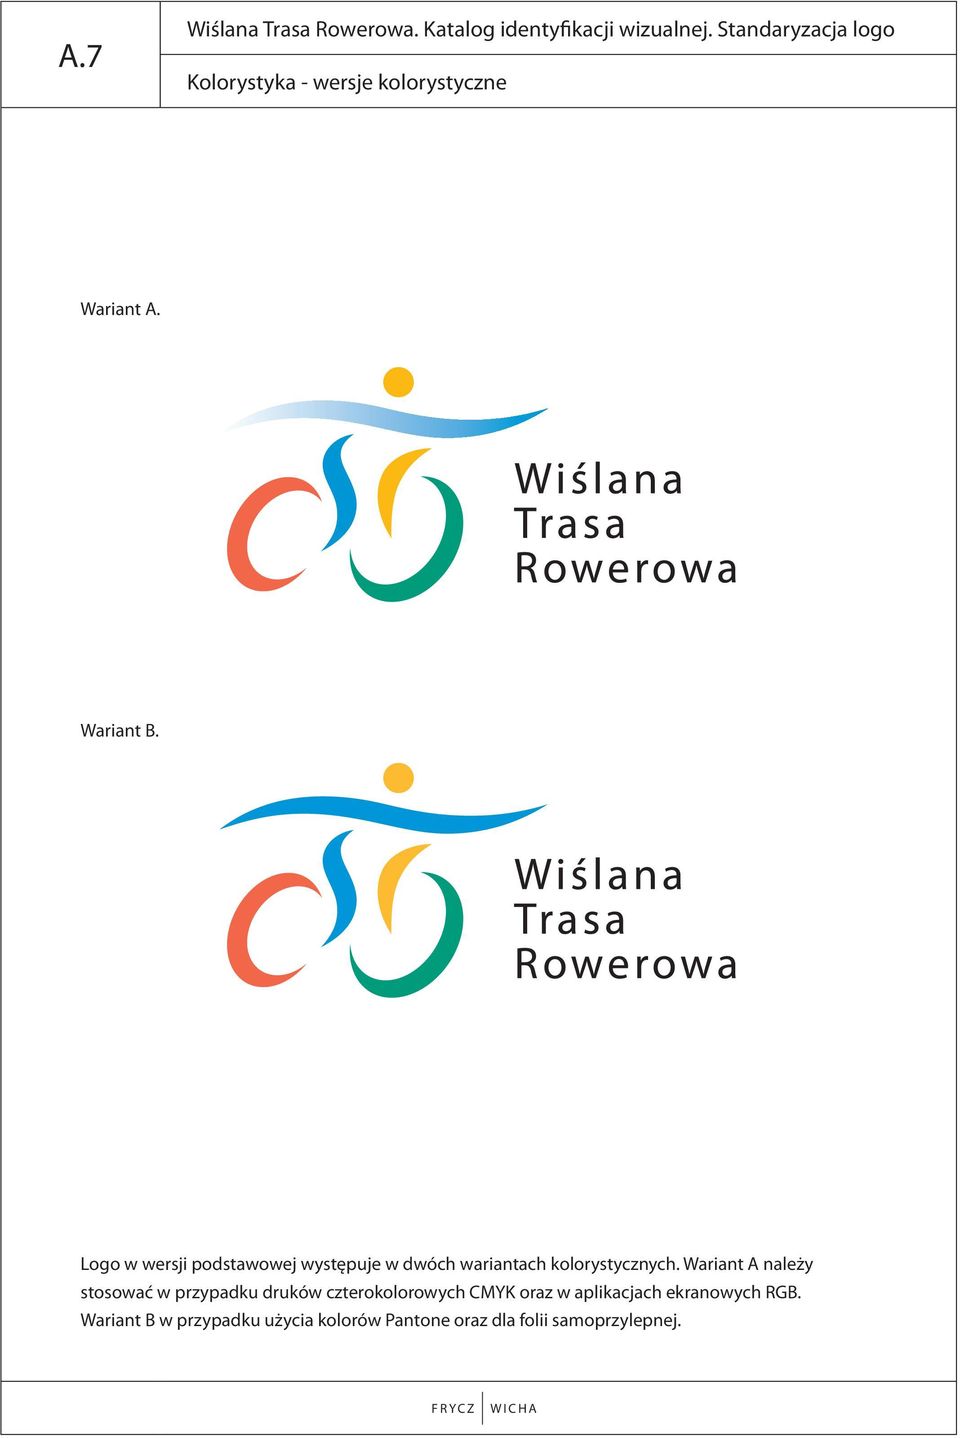 Logo w wersji podstawowej występuje w dwóch wariantach kolorystycznych.